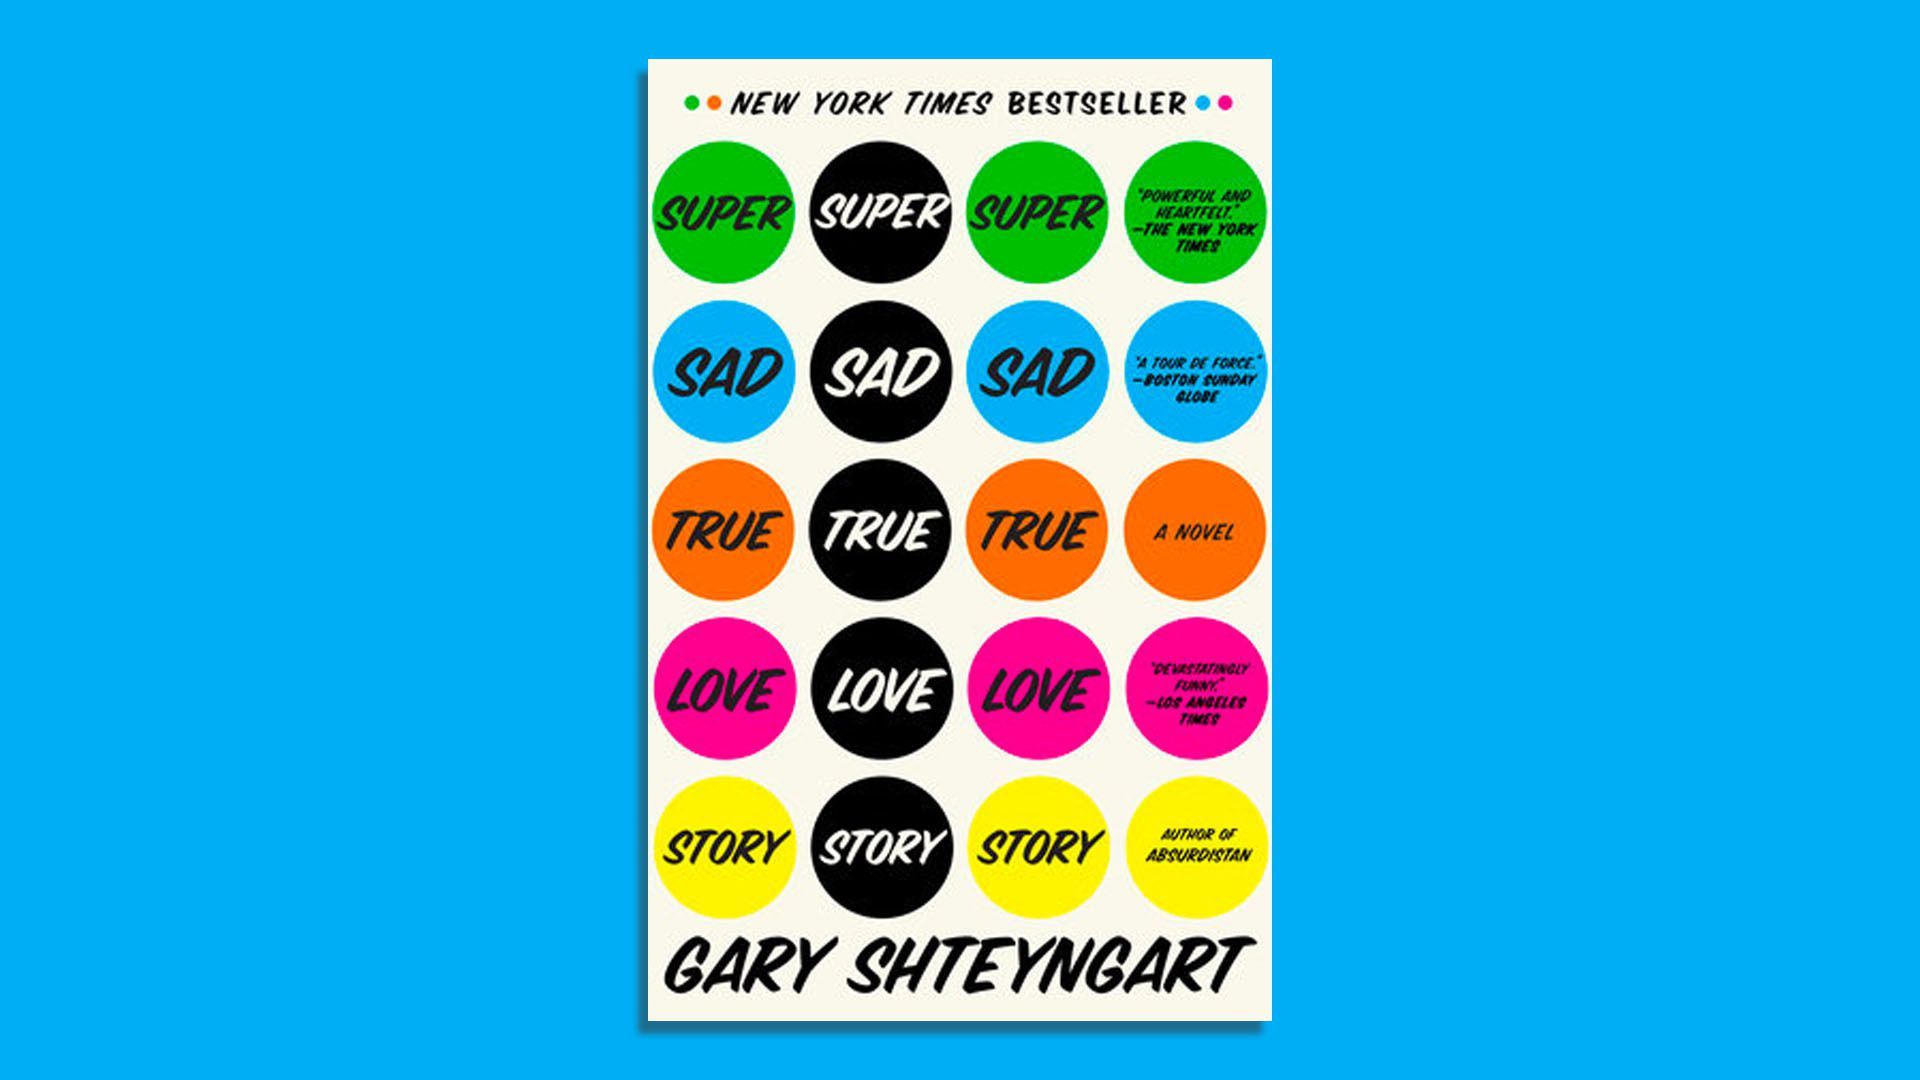 The cover of Gary Shteyngart's  "Super Sad Love Story"